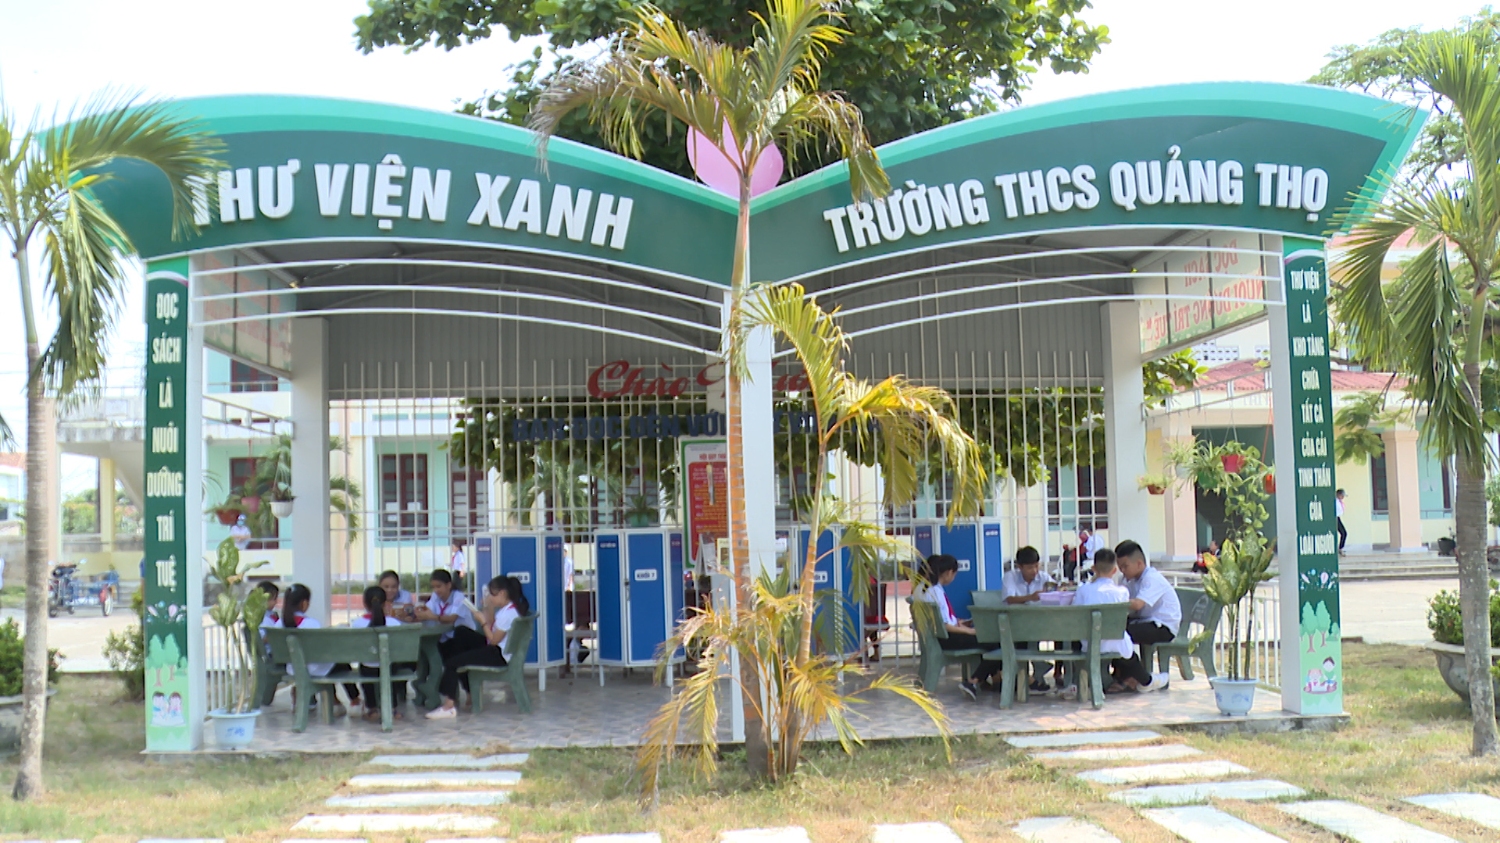 Thư viện xanh ở trường THCS Quảng Thọ